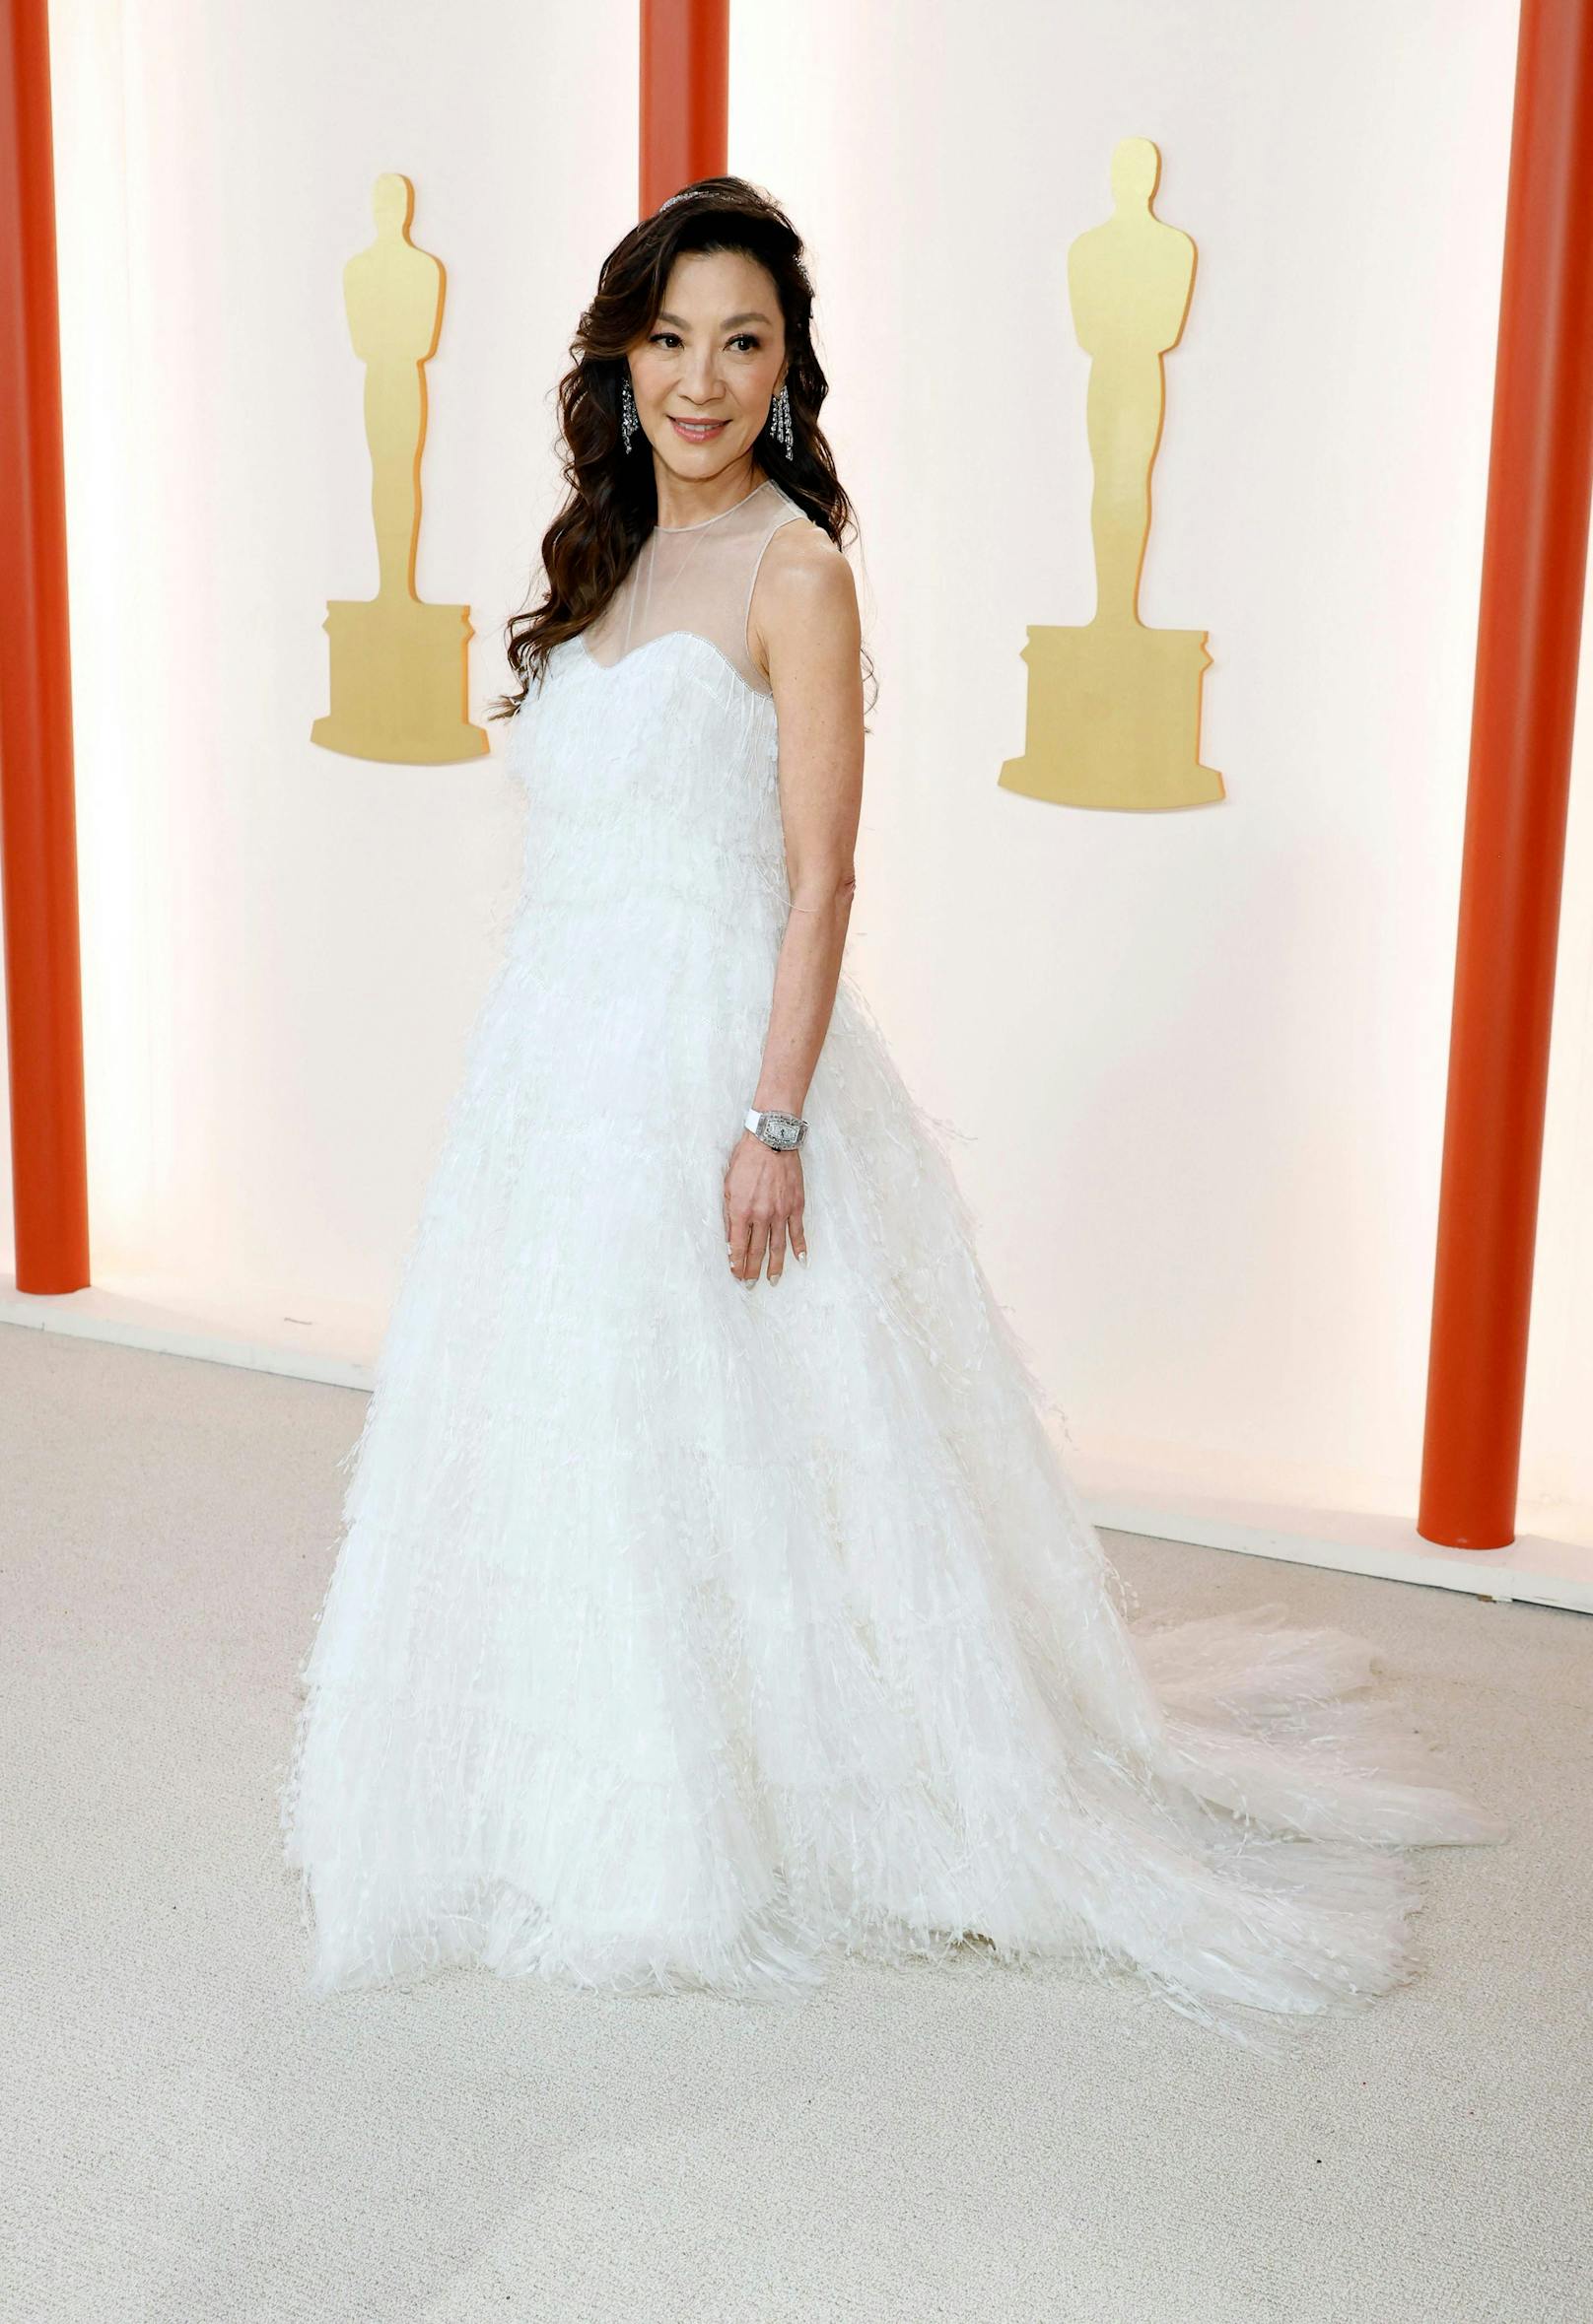 Michelle Yeoh, als erste Asiatin in der Kategorie "Beste Hauptdarstellerin" mit einem Oscar ausgezeichnet, in einem Traum aus Weiß von Christian Dior.